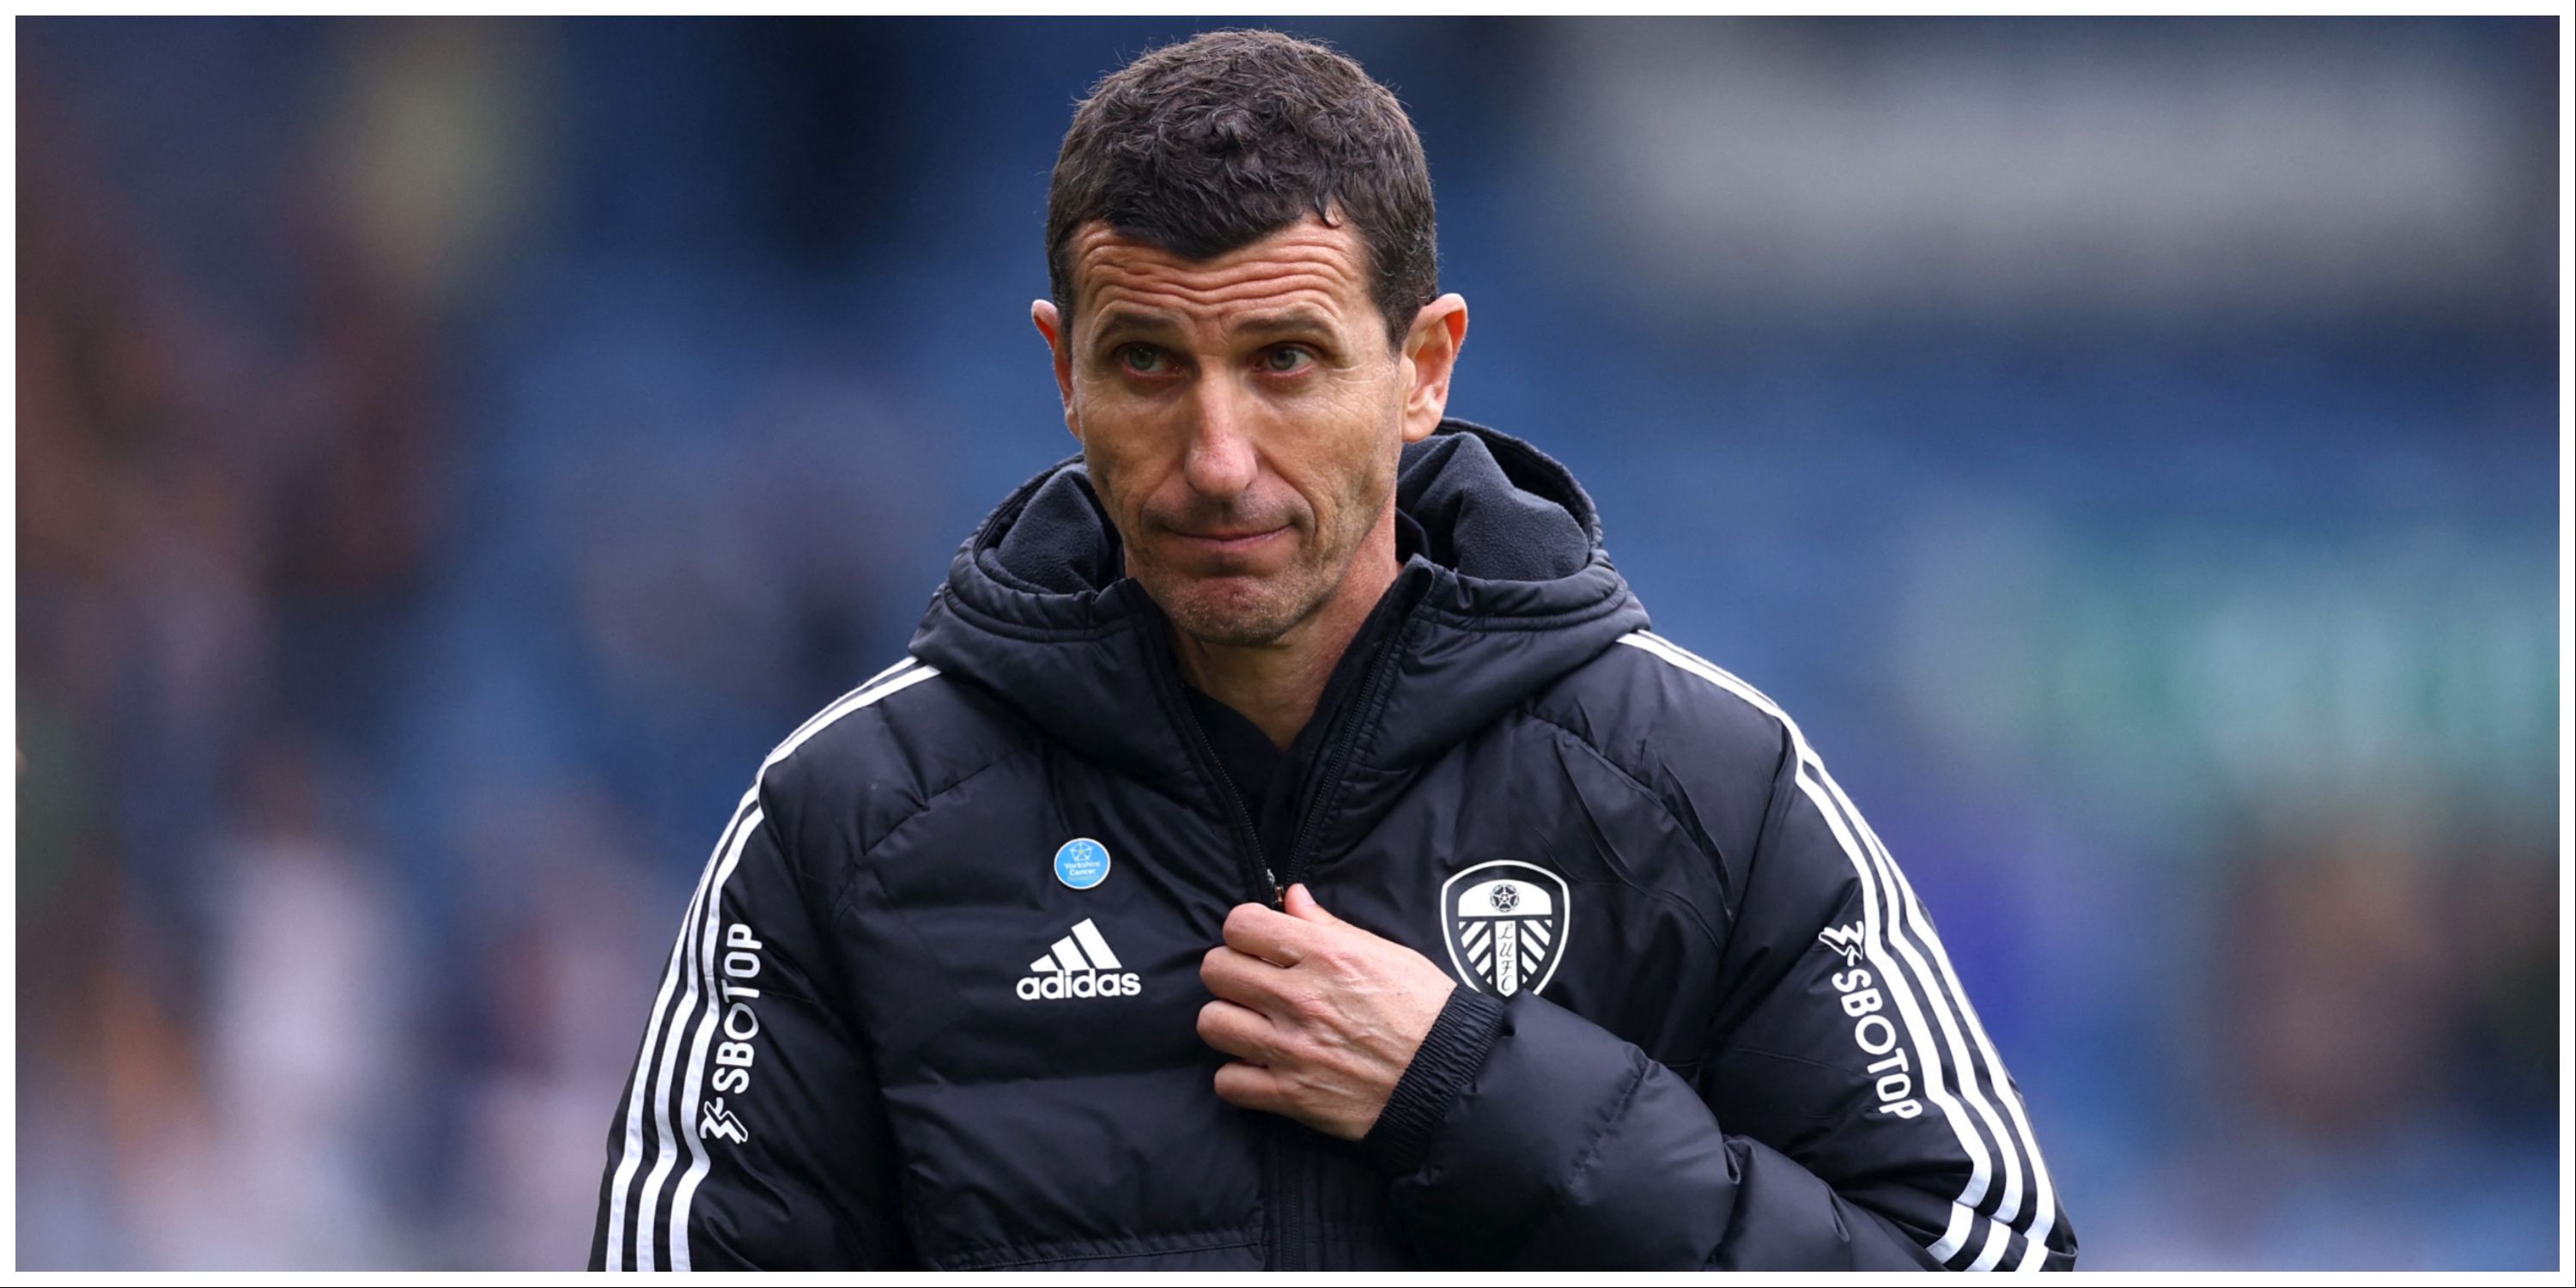 Leeds manager Javi Gracia looking calm